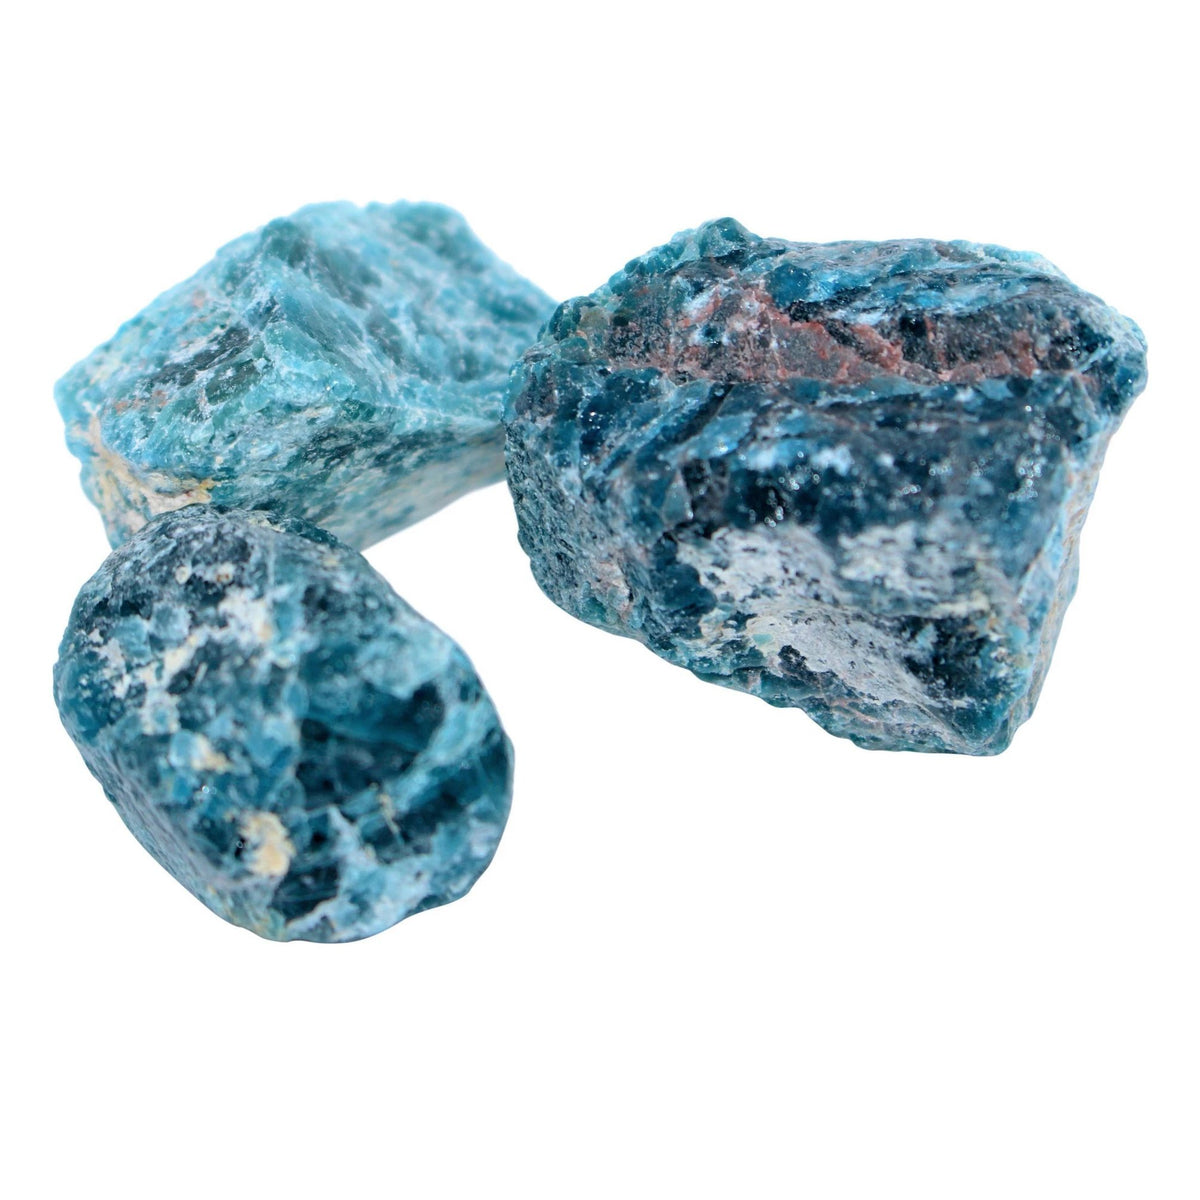 Blue Apatite Gemstone Uses & Crystal Healing Properties